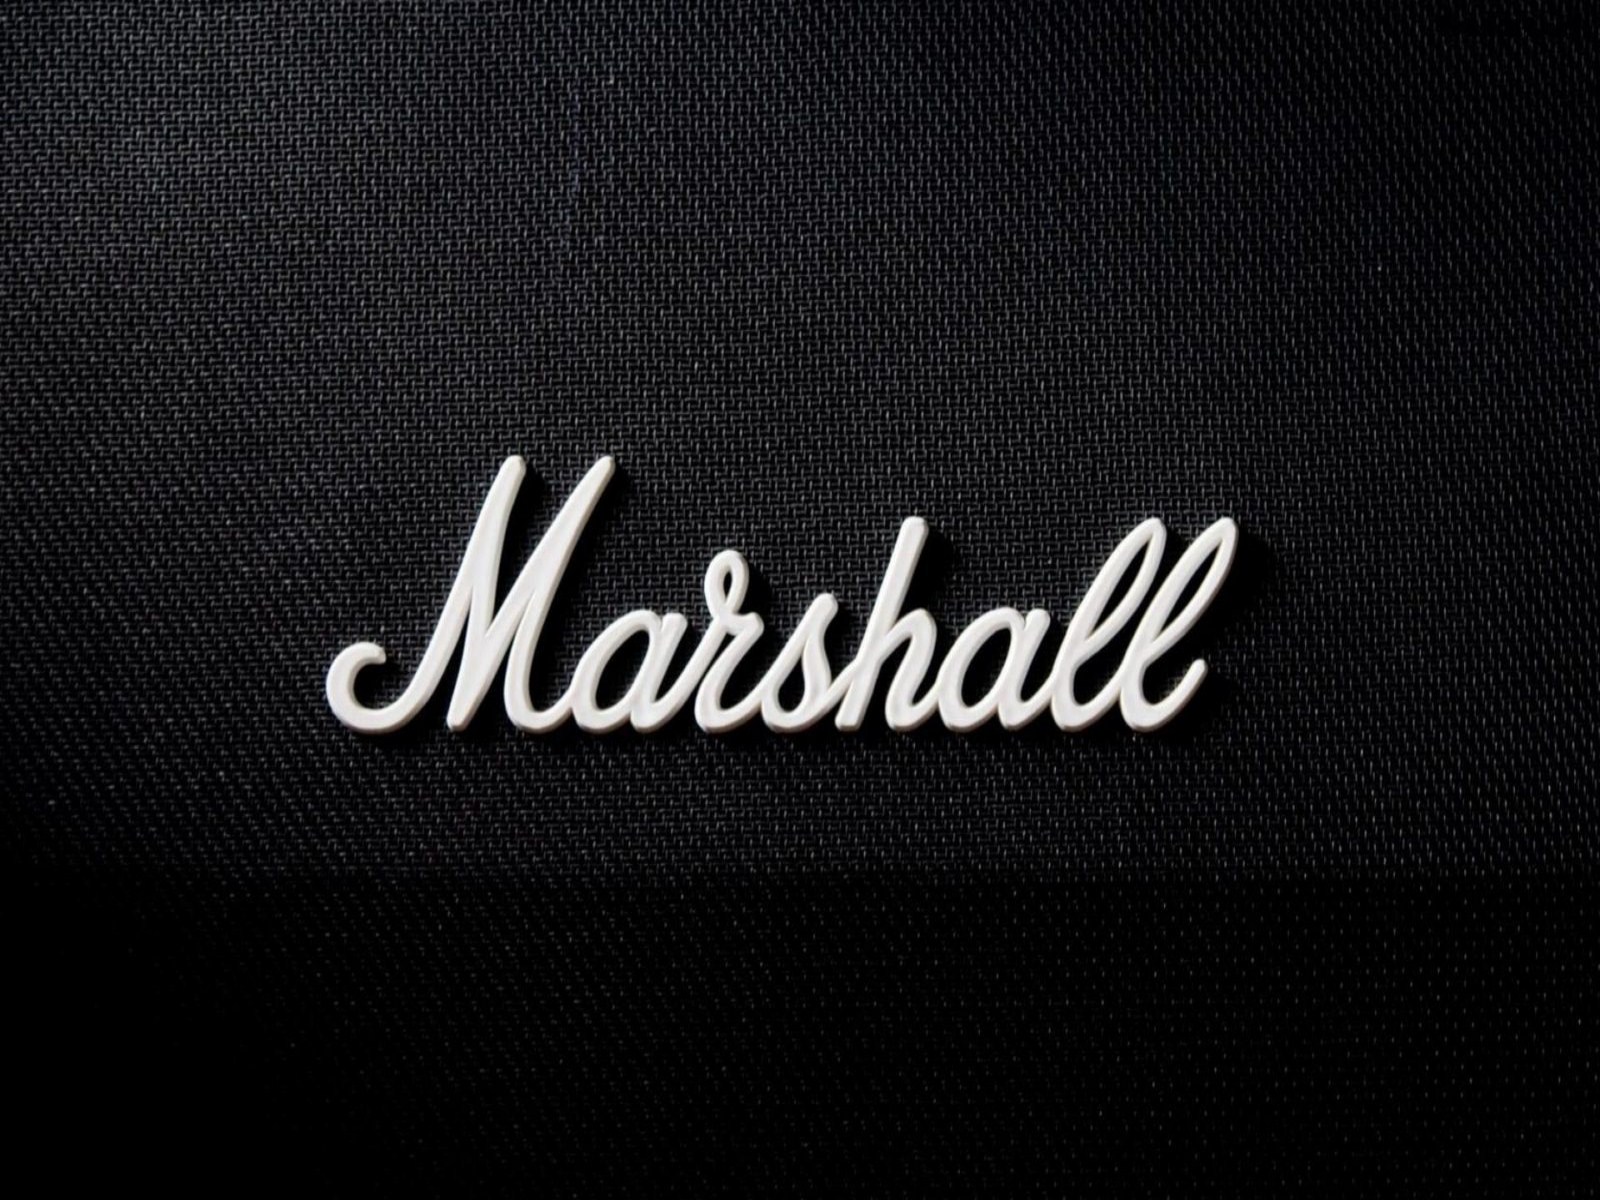 Marshall Amplification Wallpaper